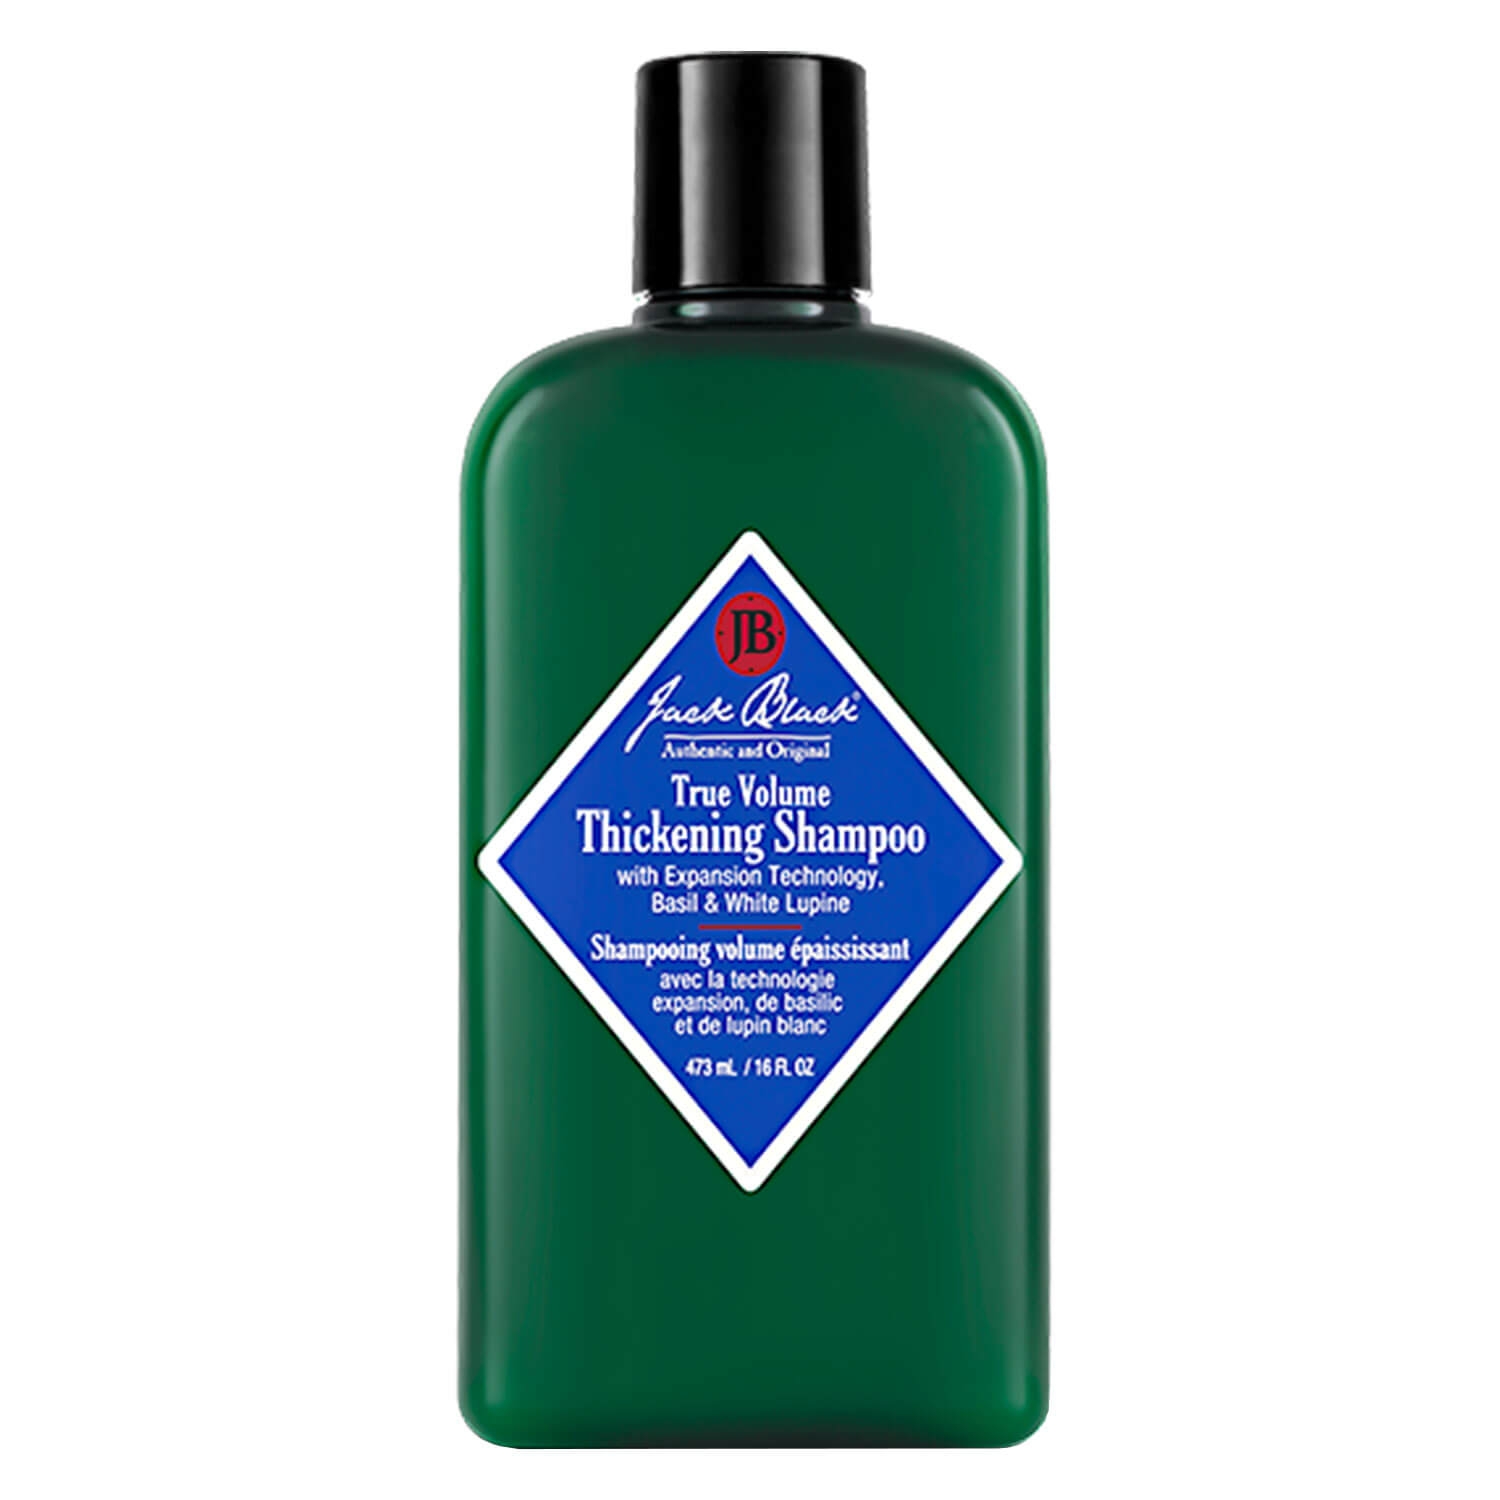 Produktbild von Jack Black - True Volume Thickening Shampoo